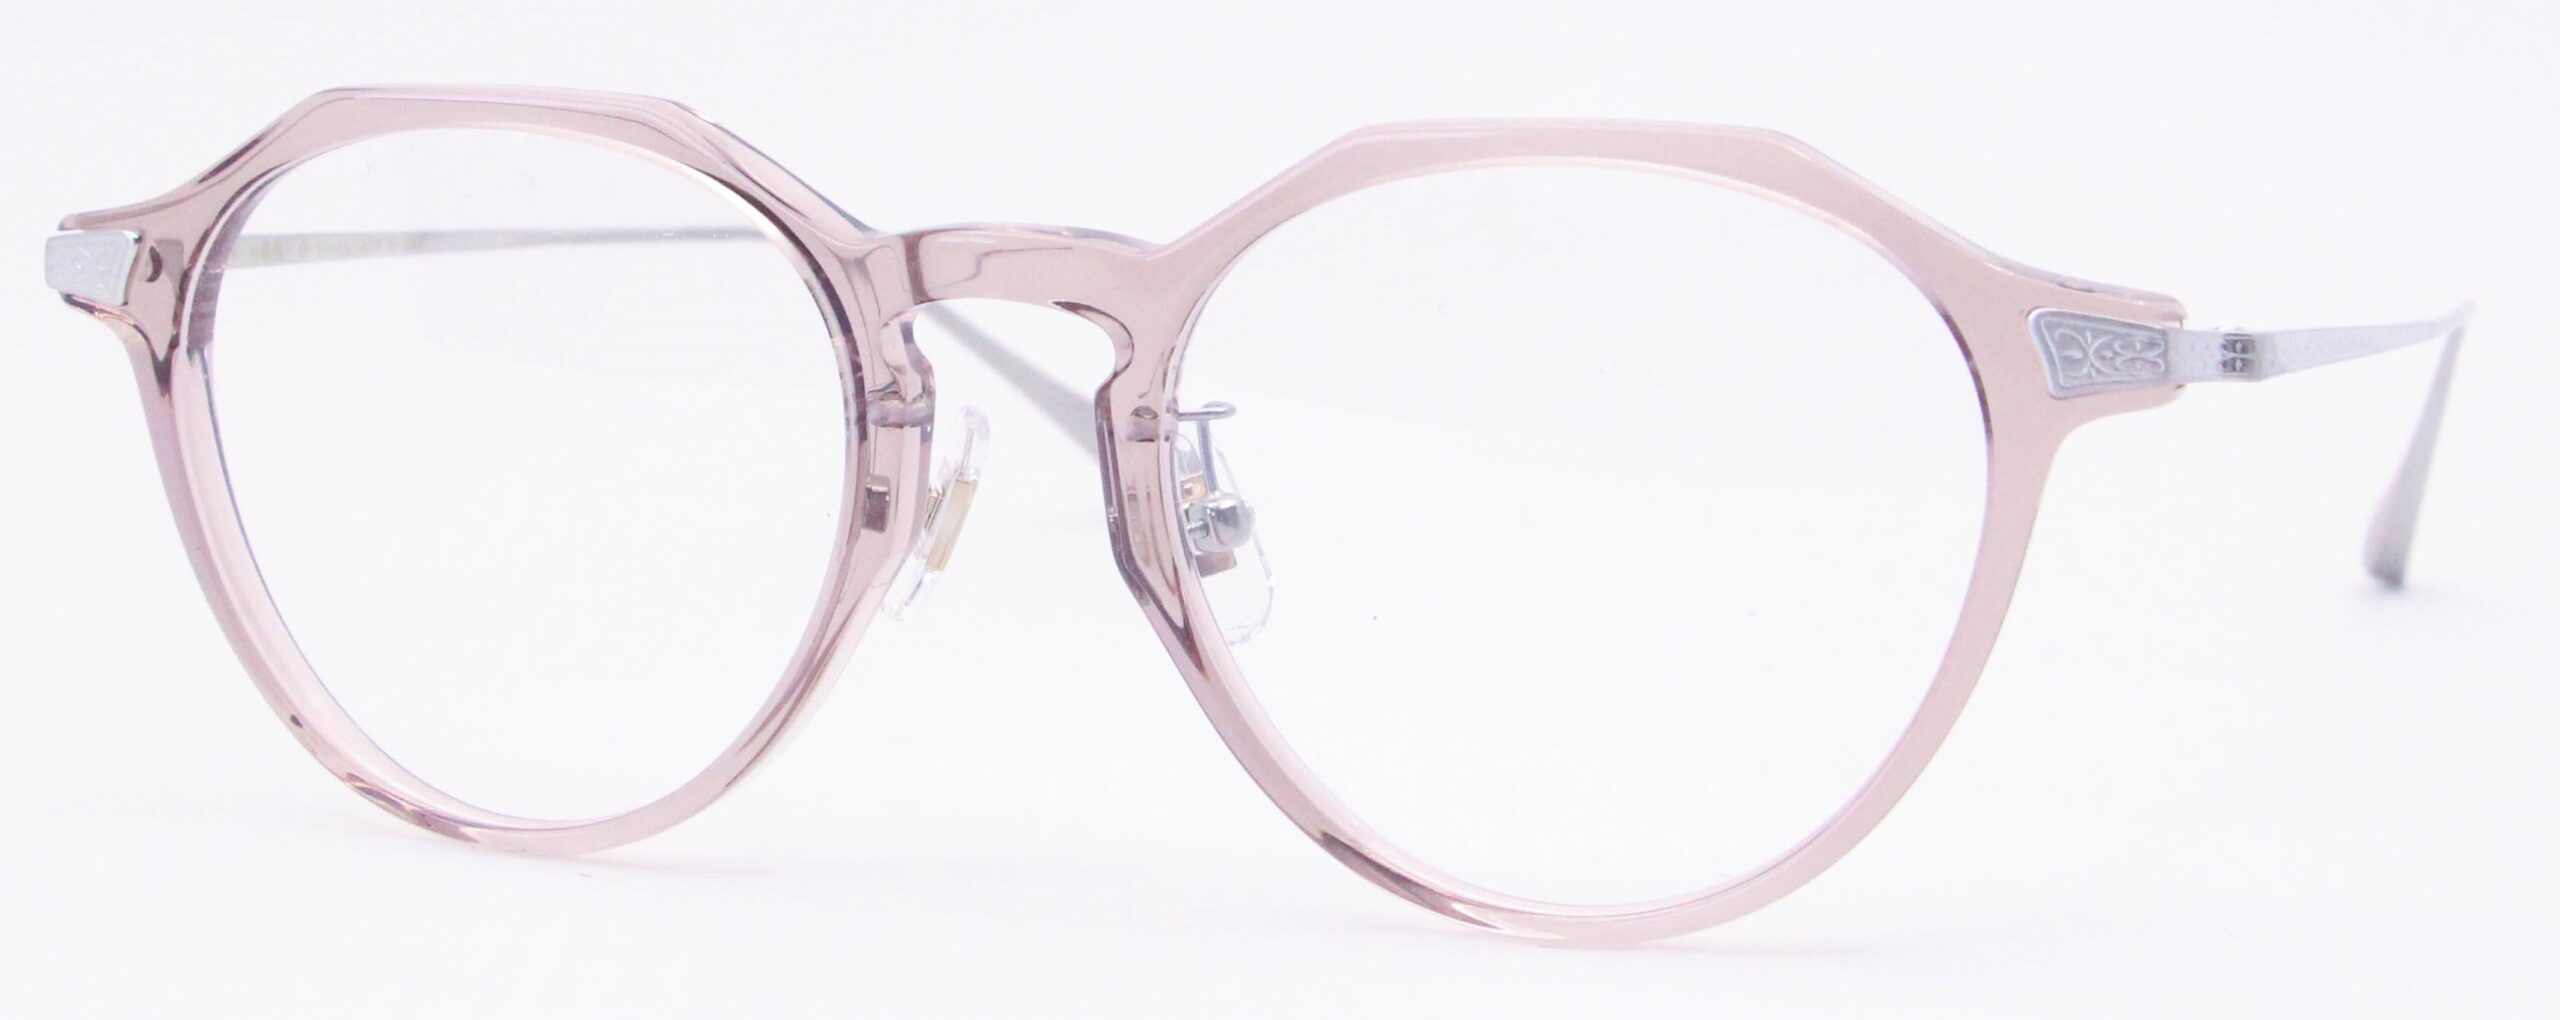 眼鏡のカラータイプC-6 Pink-Brown/Silver